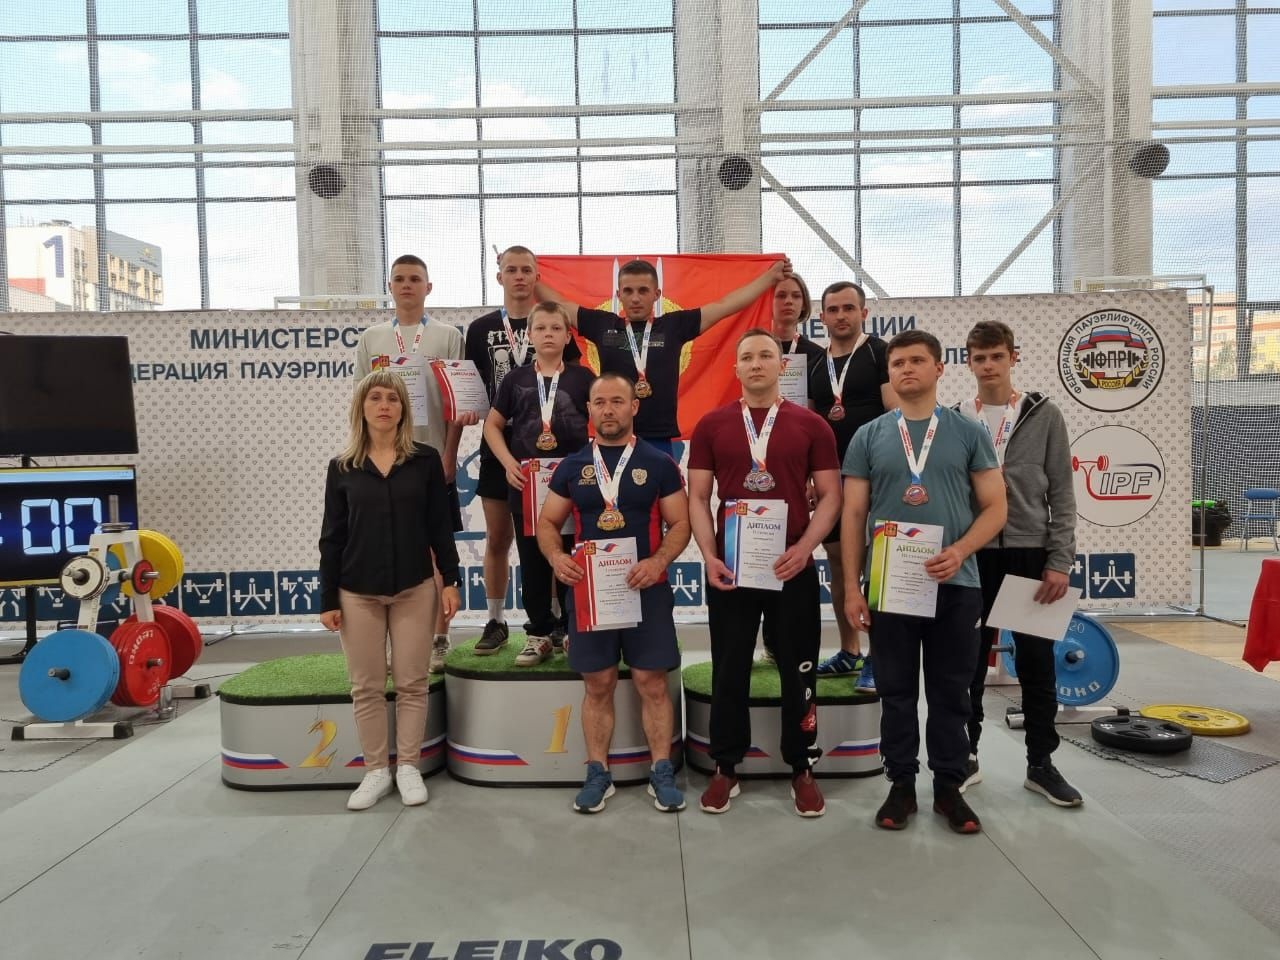 Определены победители чемпионата Брянской области по троеборью и жиму лежа